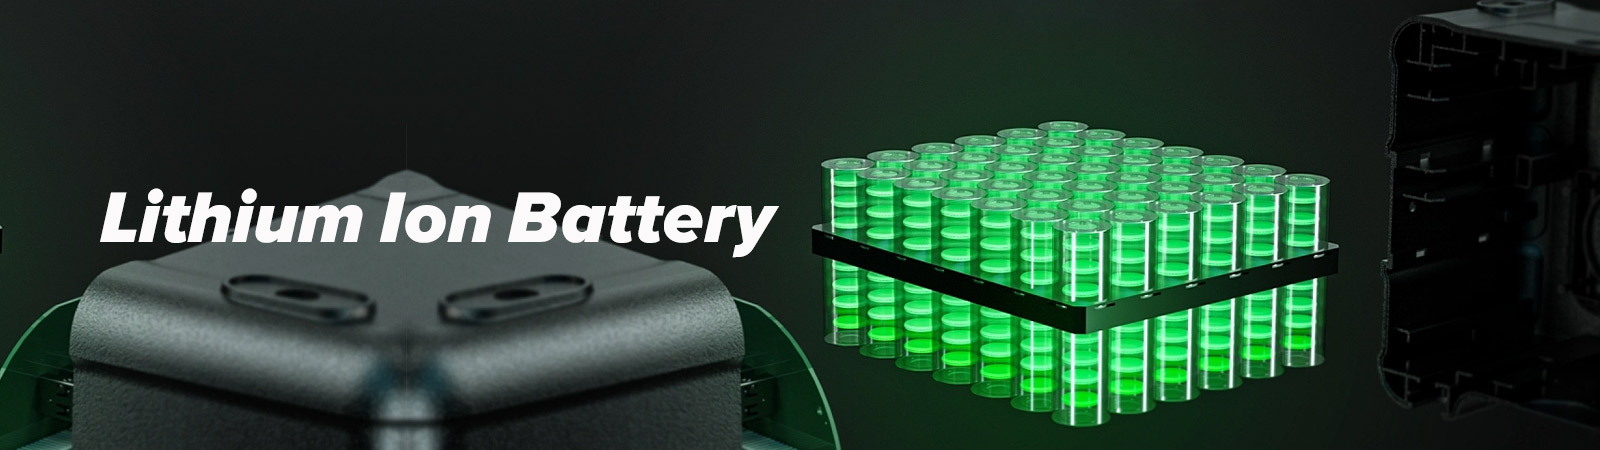 48V Lithium Battery